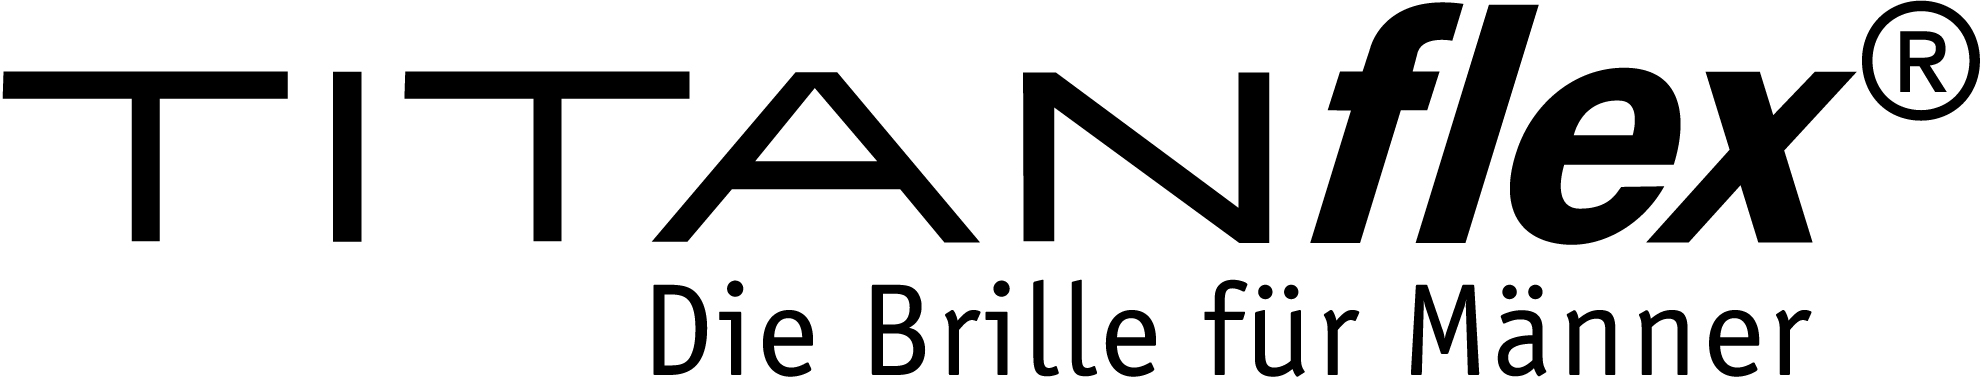 Logo Titanflex